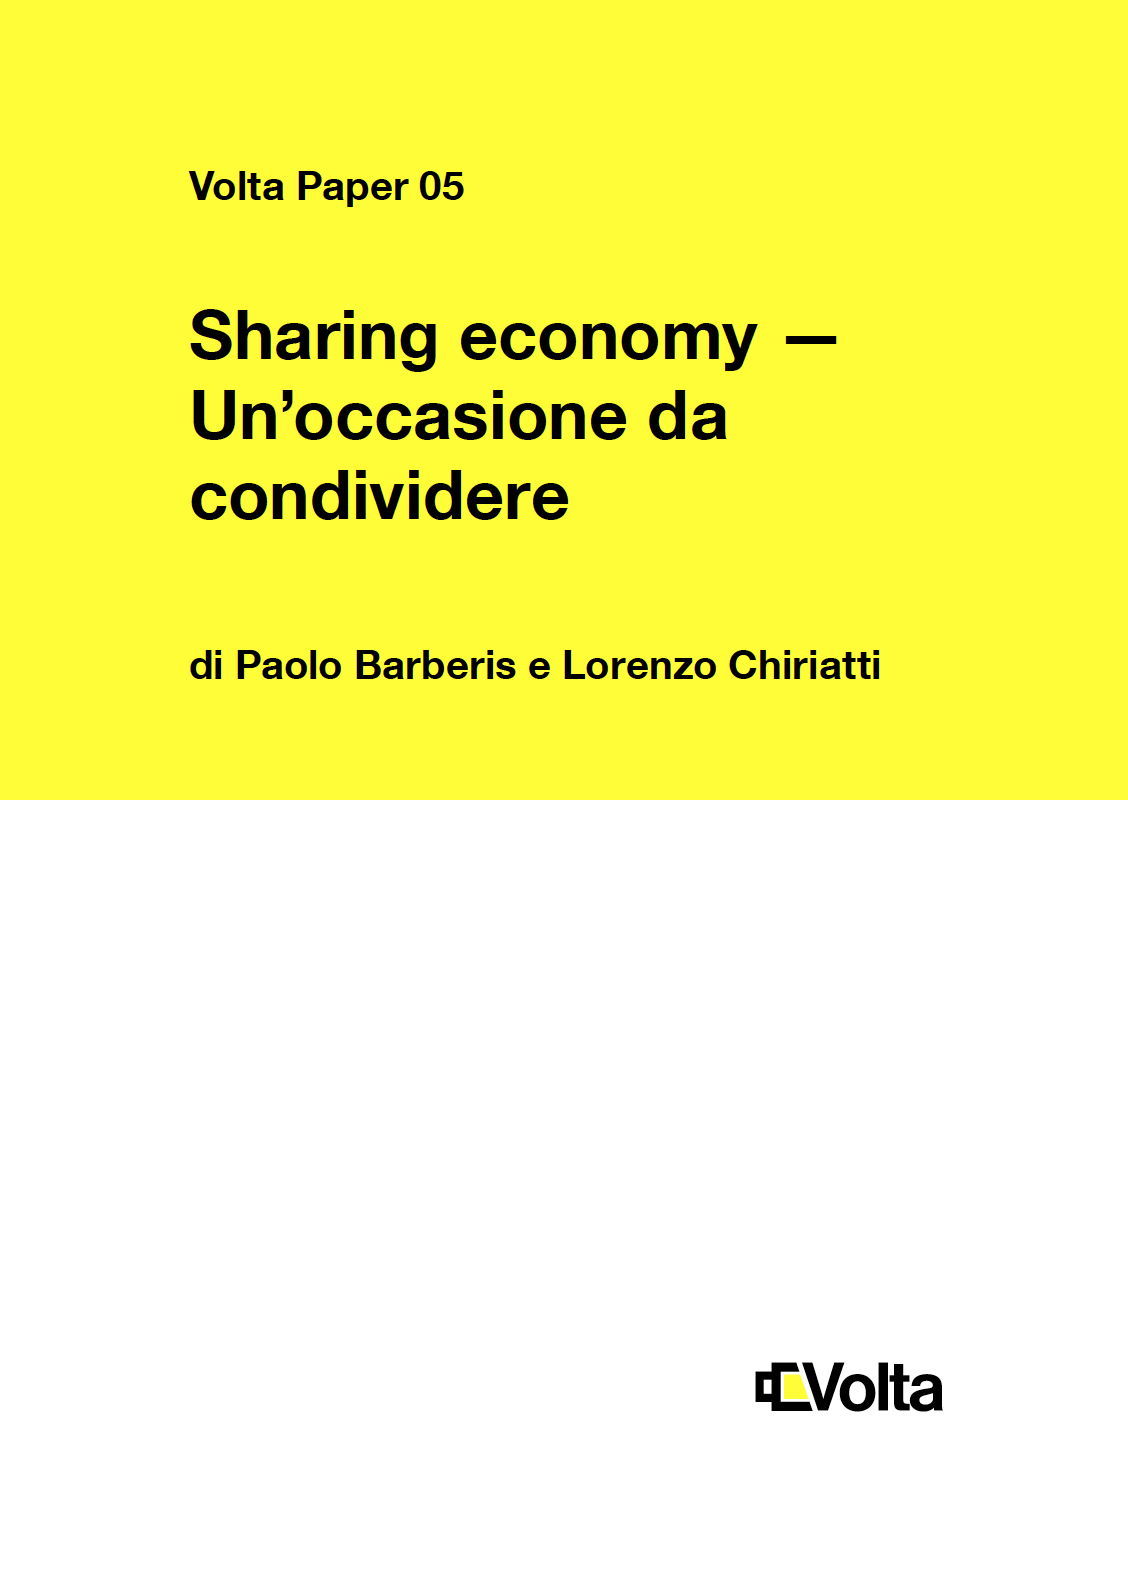 Sharing Economy / Un’occasione da condividere